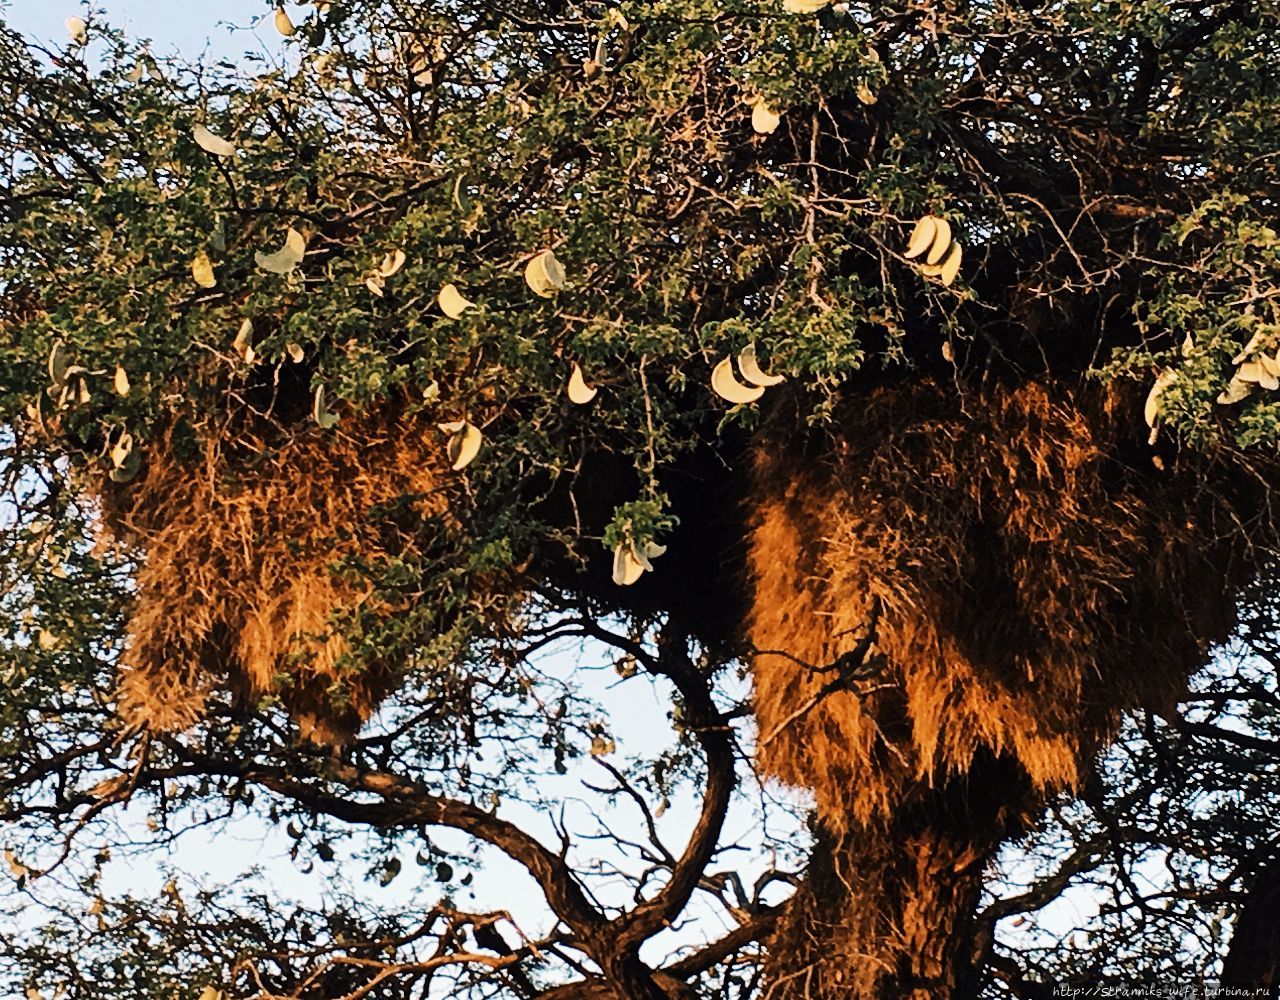 Новый год в Намибии. Часть 3. Ужин с гепардами. Солитейр, Намибия